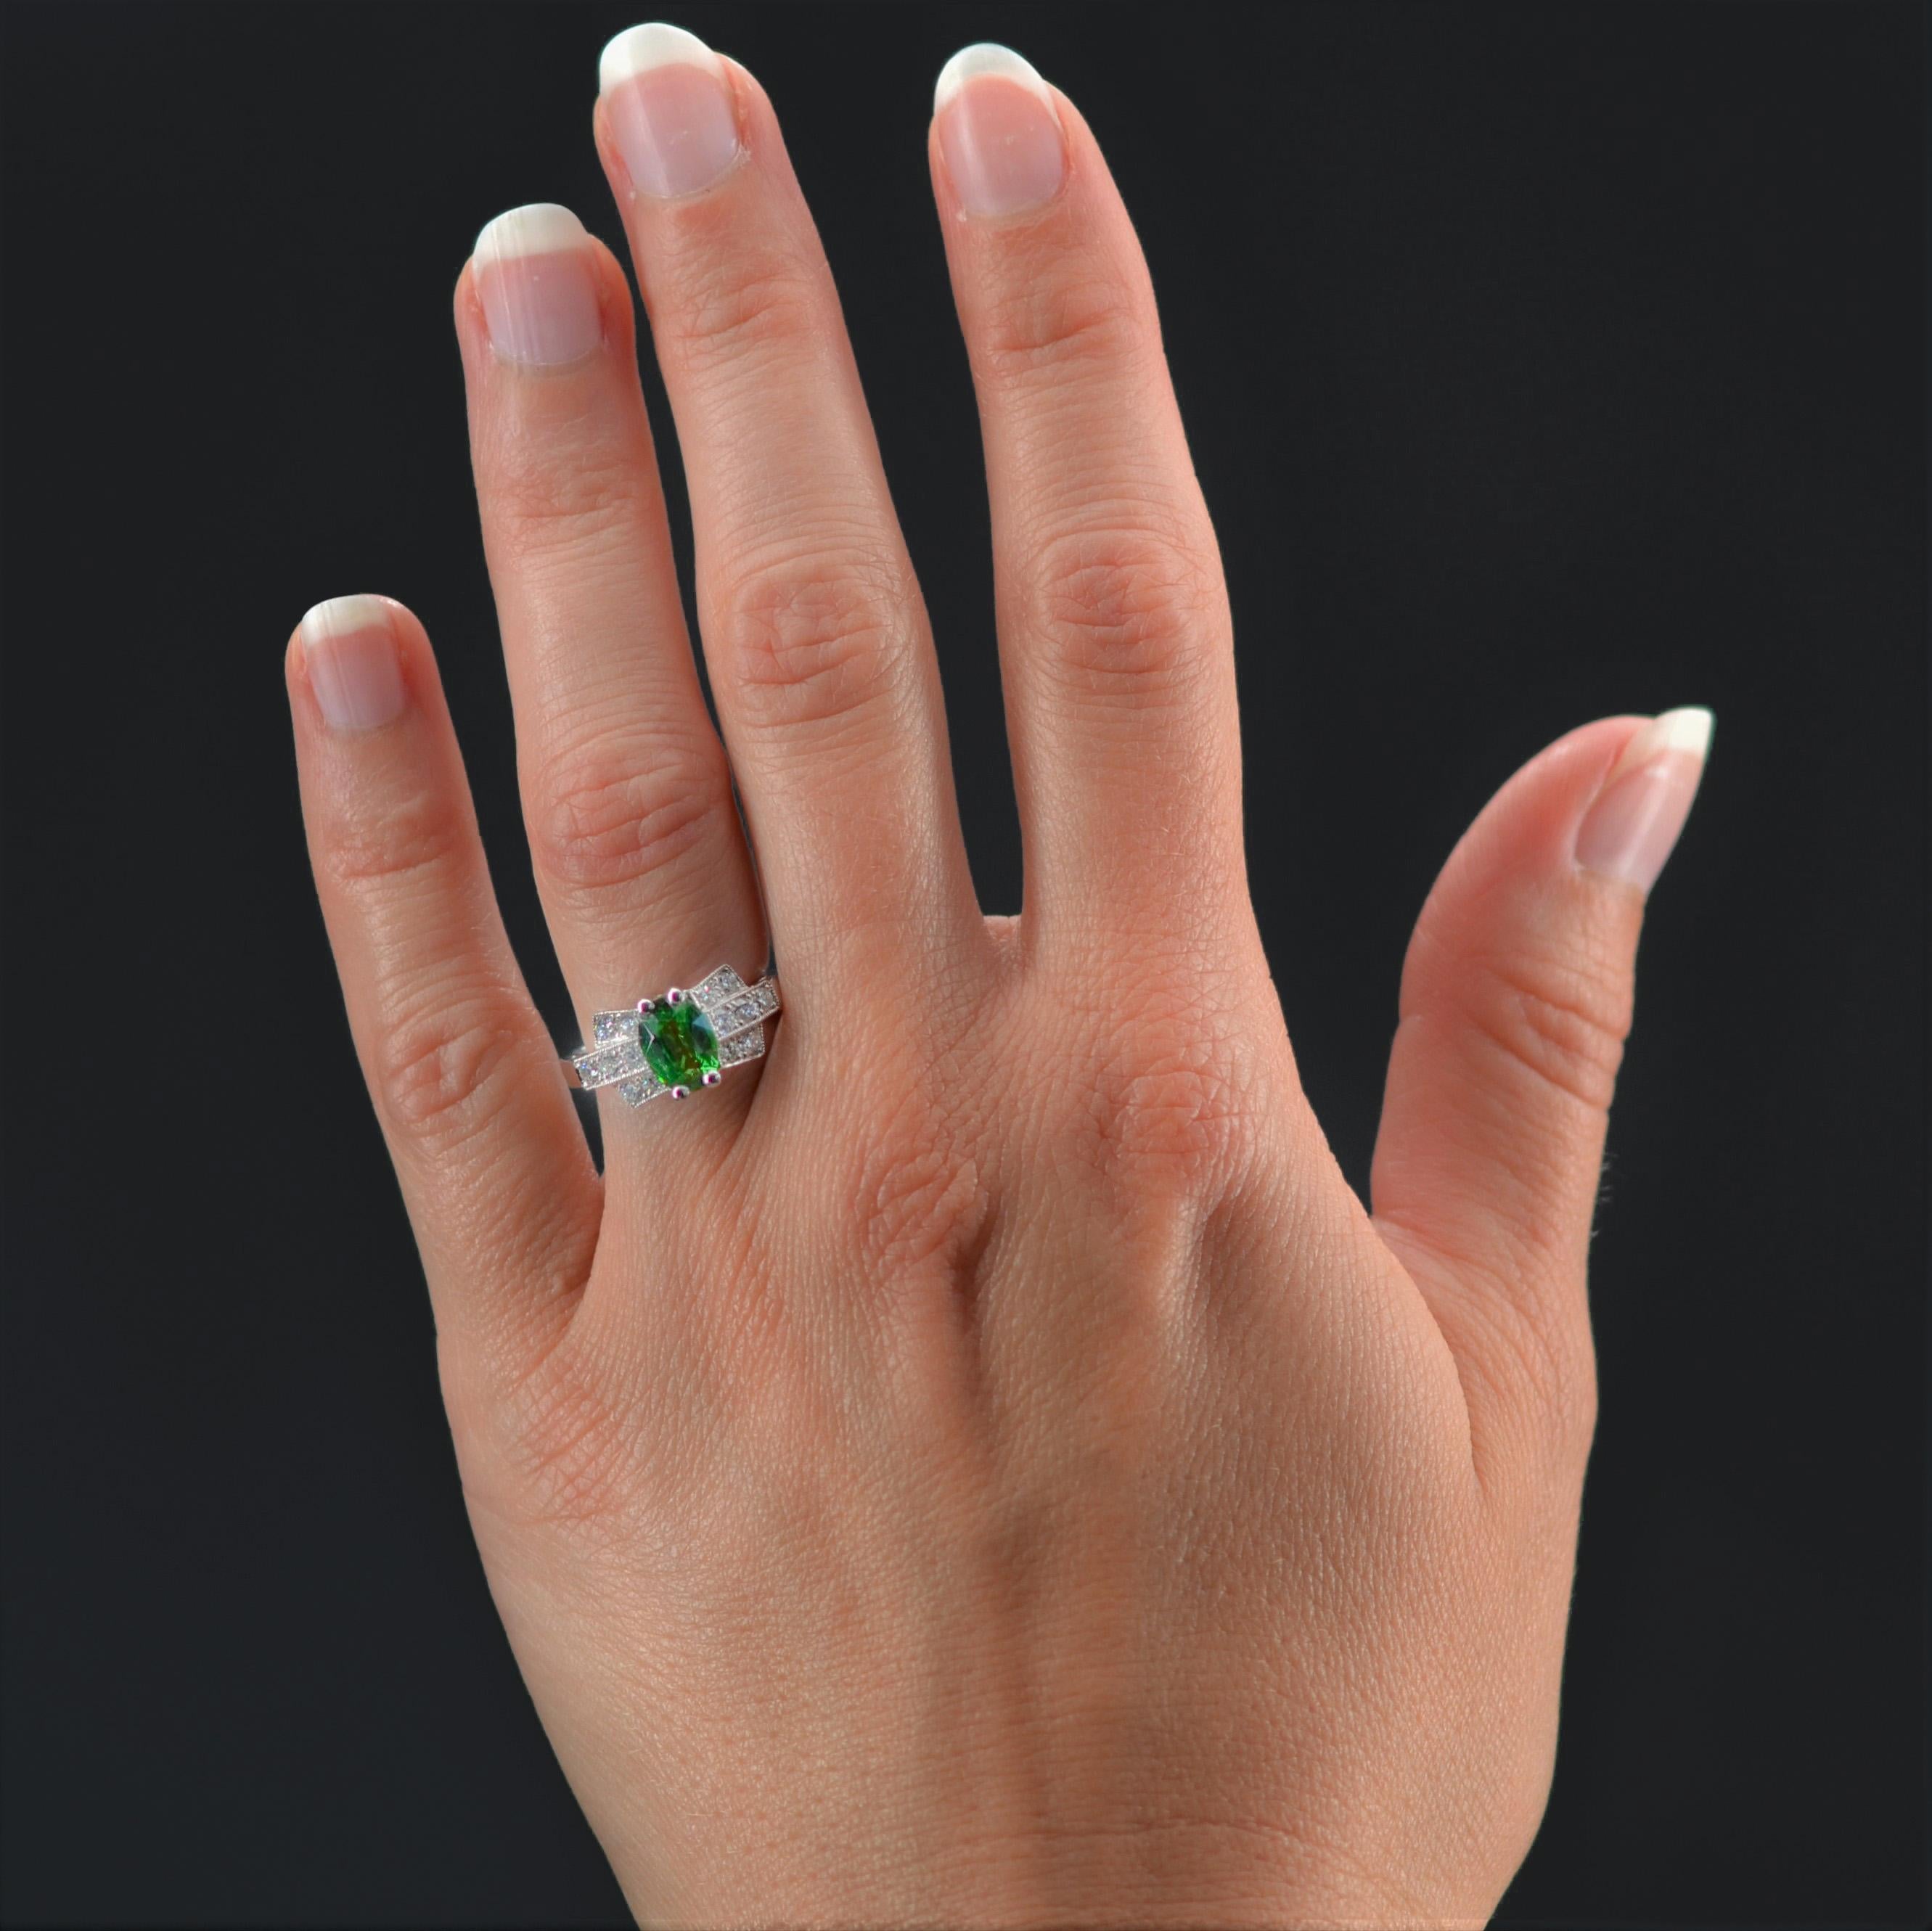 Ring aus Platin, Hundekopfpunze.
Dieser wunderschöne, vom Art déco inspirierte Ring ist mit einem hellgrünen Tsavorit-Granat besetzt. Auf beiden Seiten ist ein geometrisches Dekor aus 3 Linien moderner Diamanten im Brillantschliff